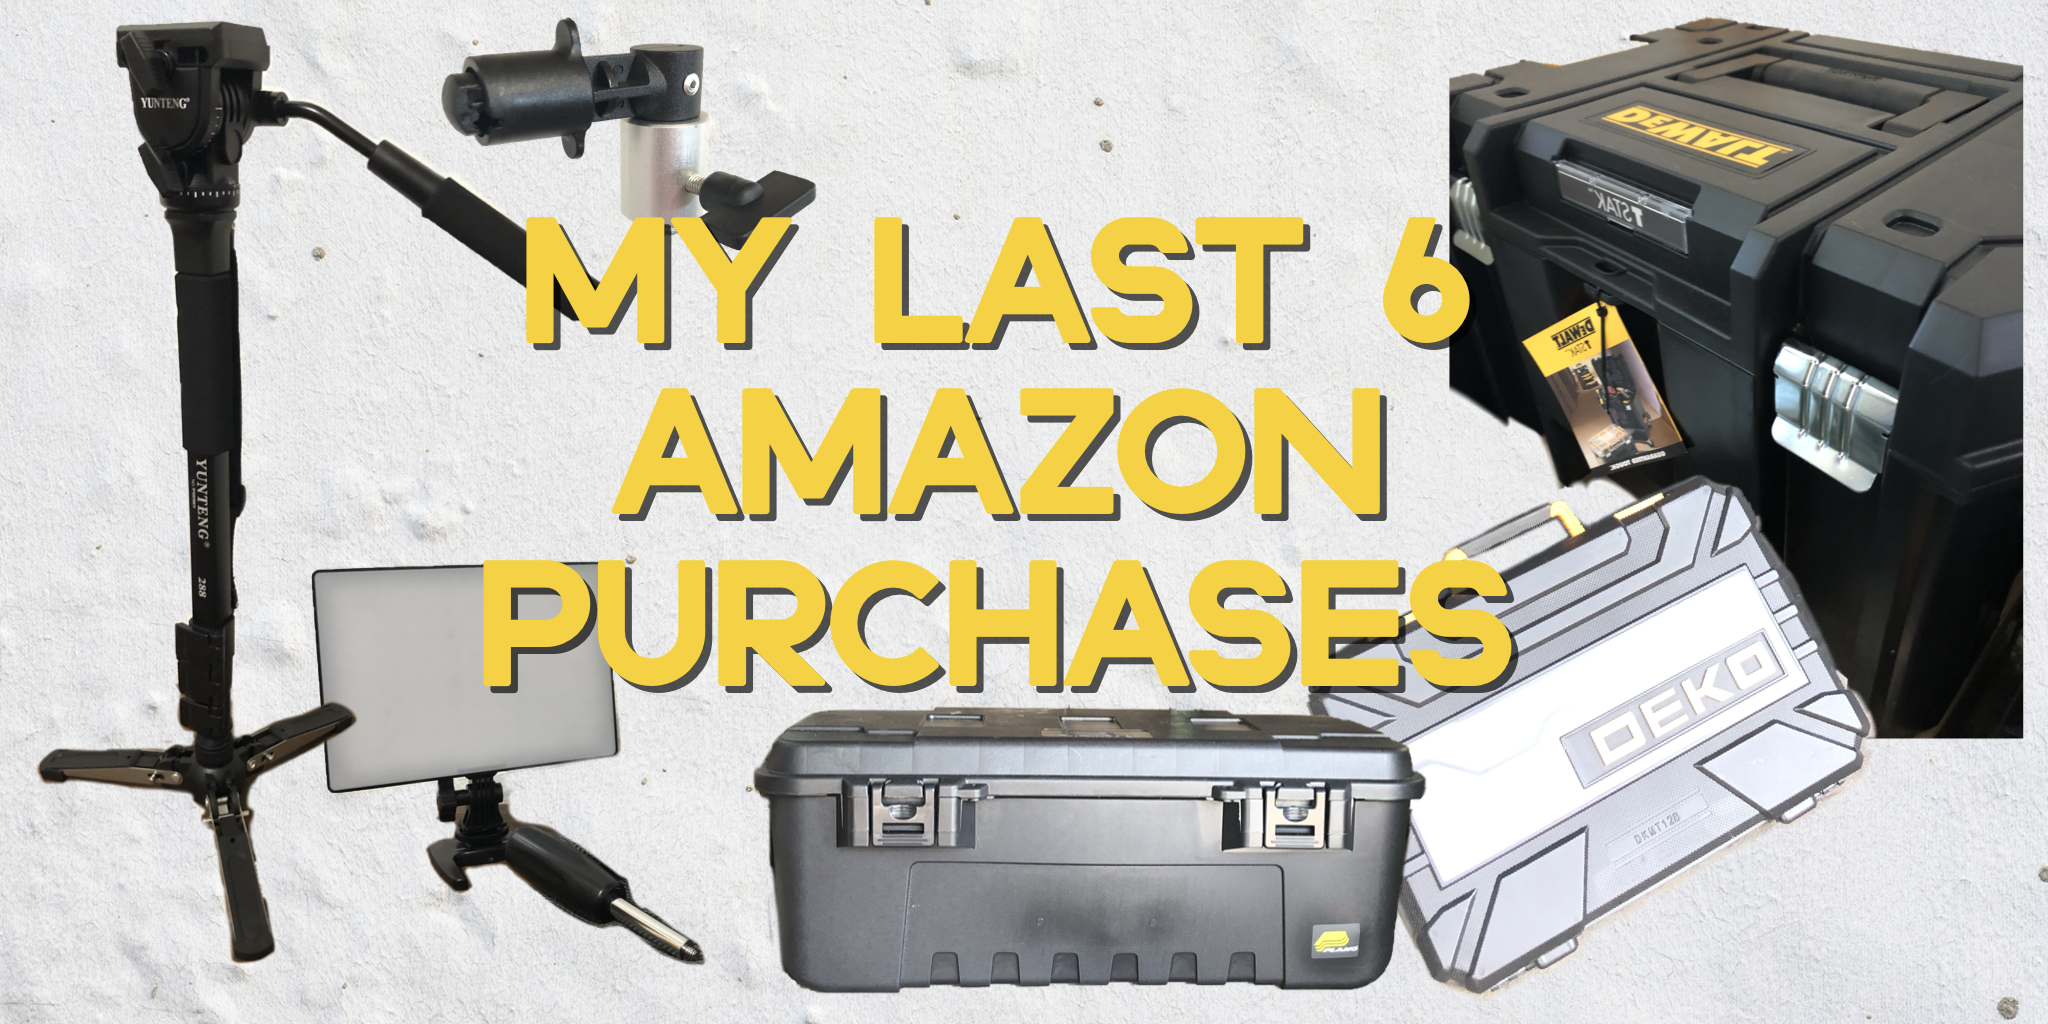 My Last 6 Amazon Purchases